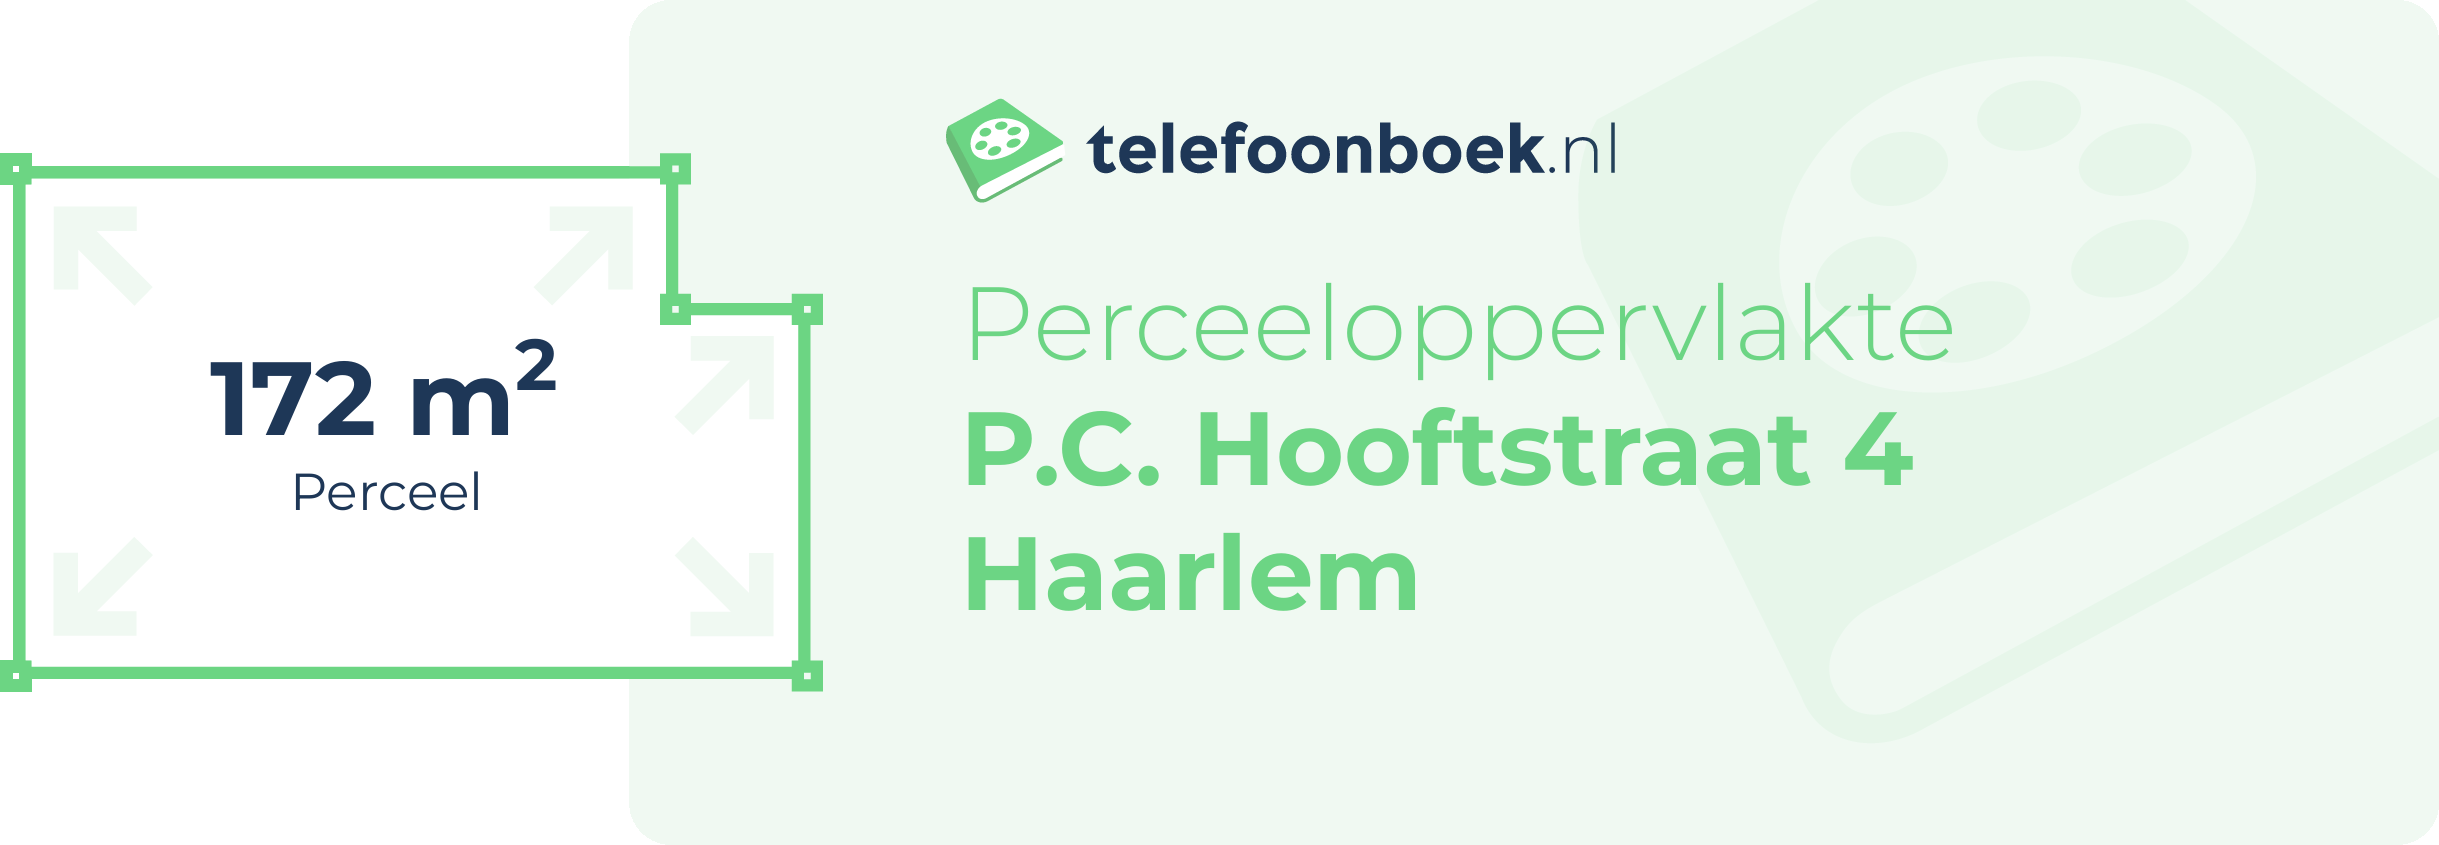 Perceeloppervlakte P.C. Hooftstraat 4 Haarlem